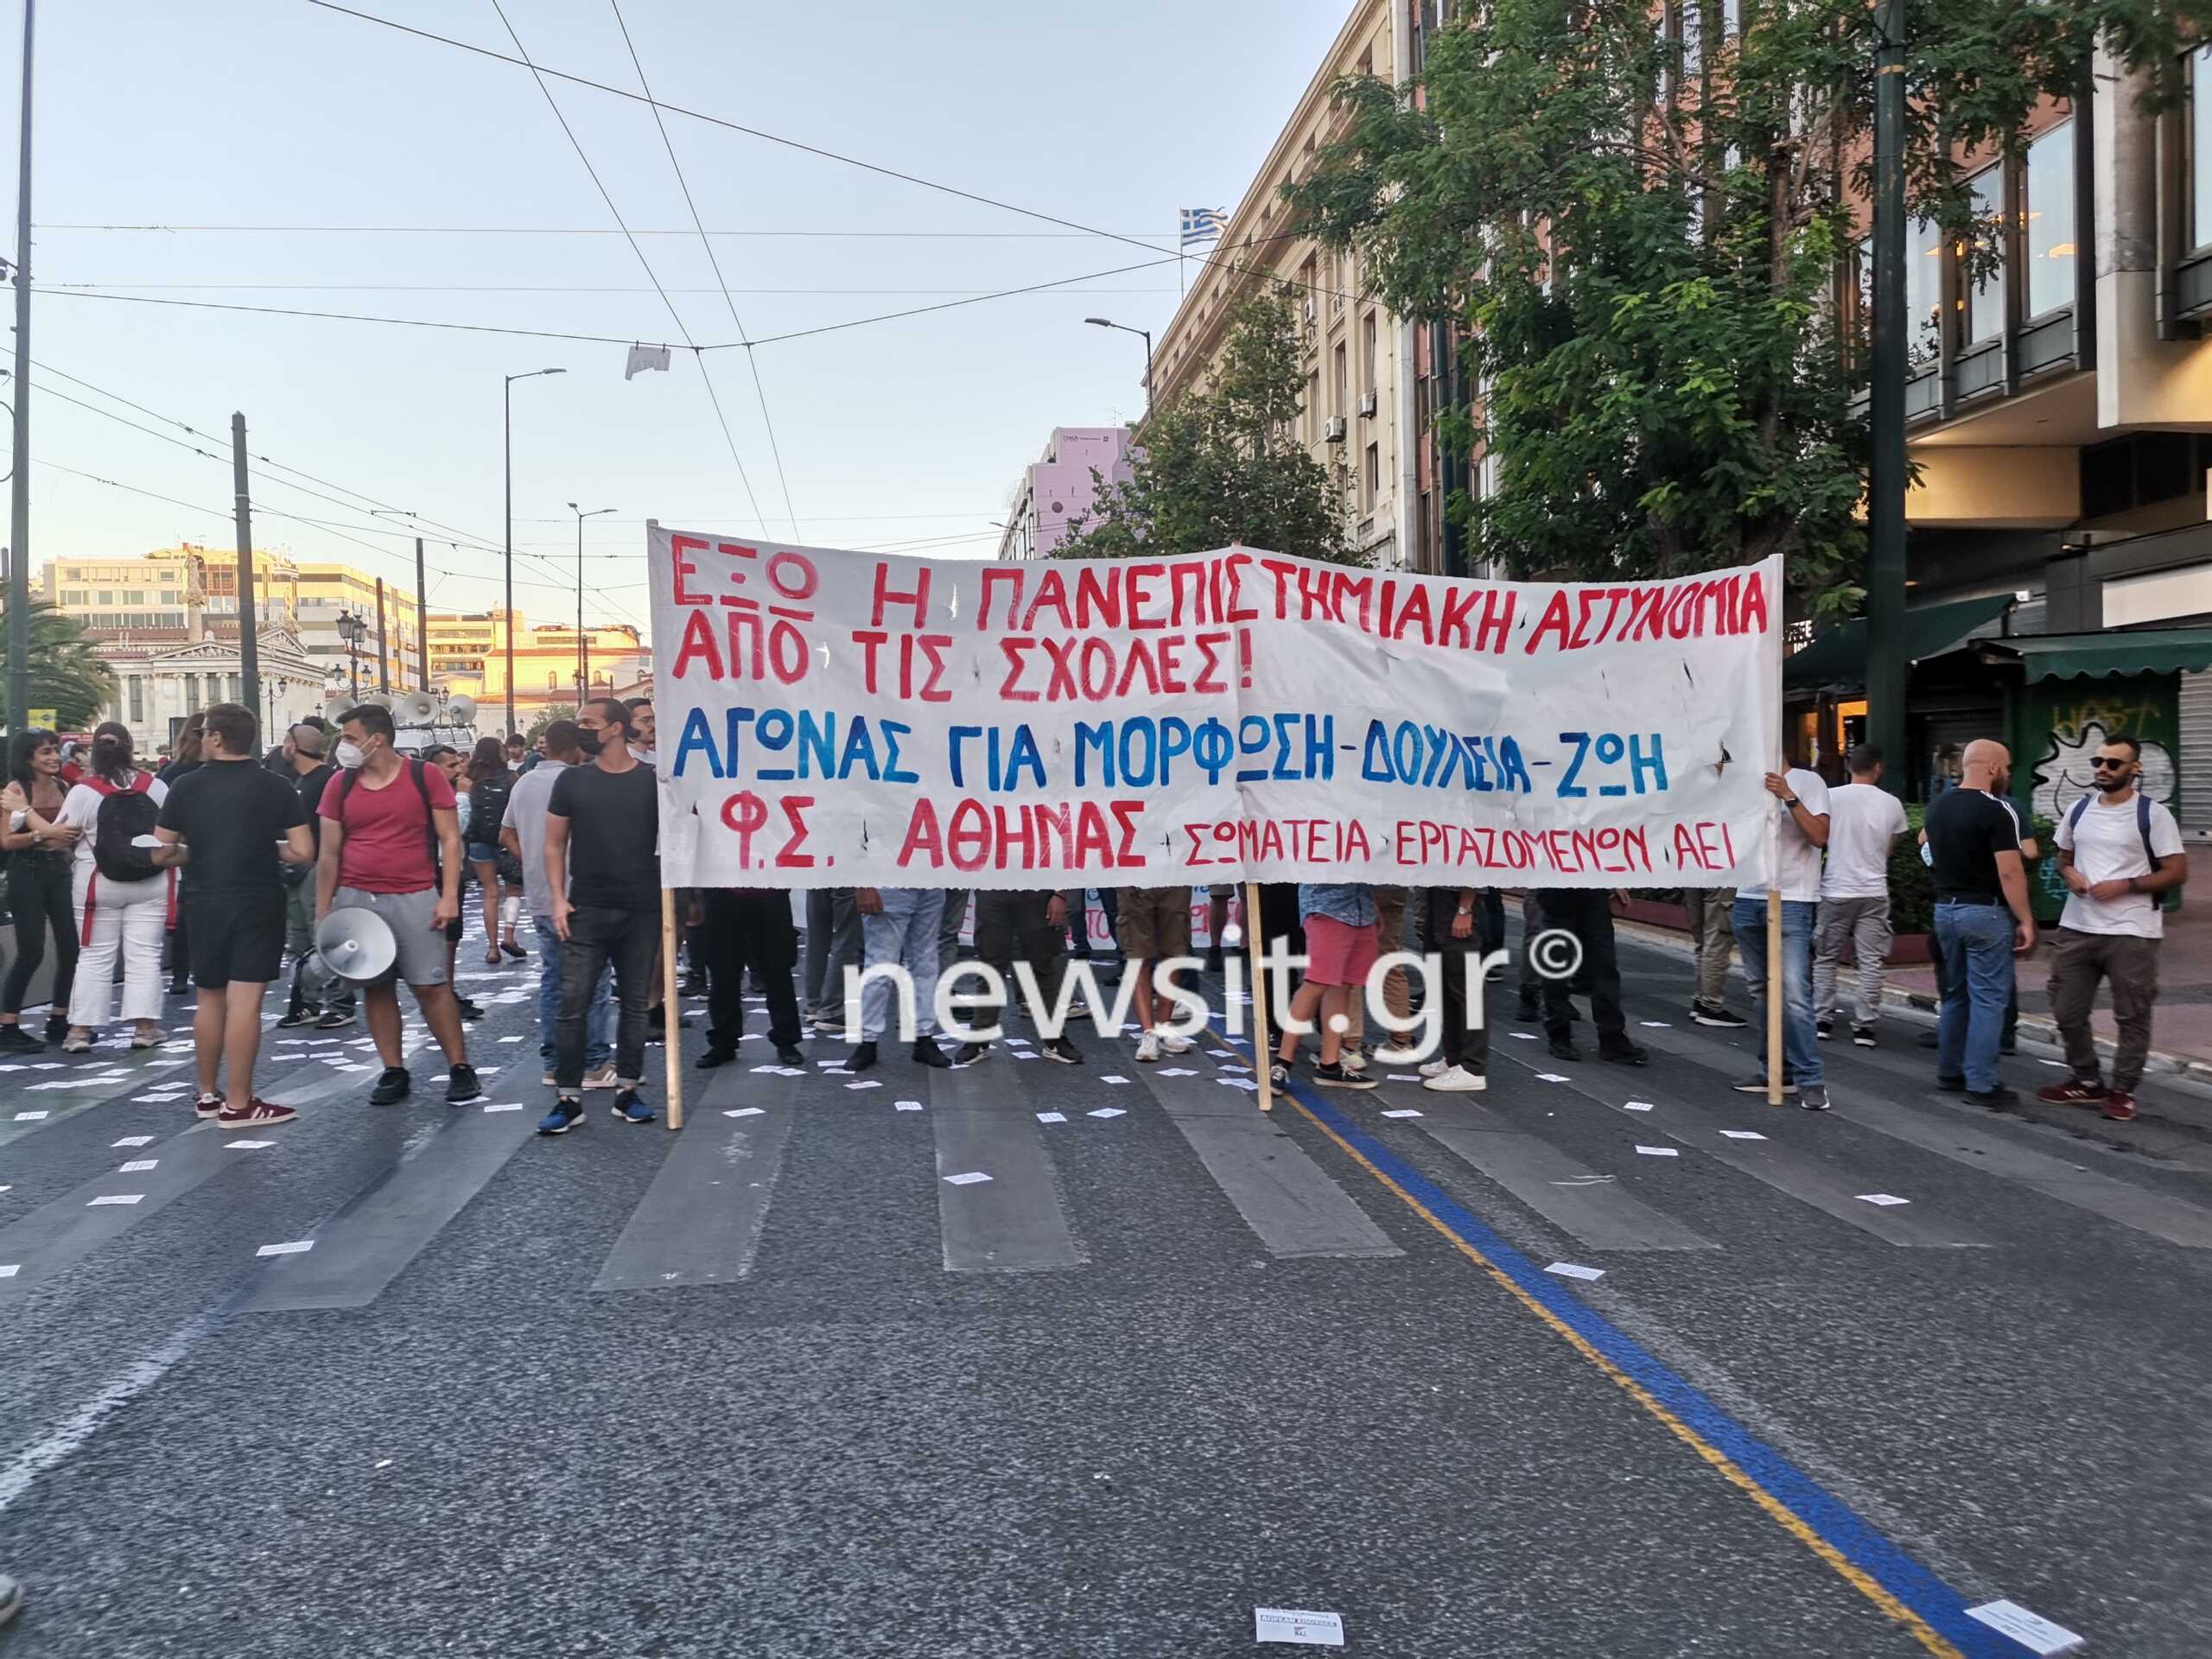 Πορεία φοιτητών στο κέντρο της Αθήνας κατά της πανεπιστημιακής αστυνομίας